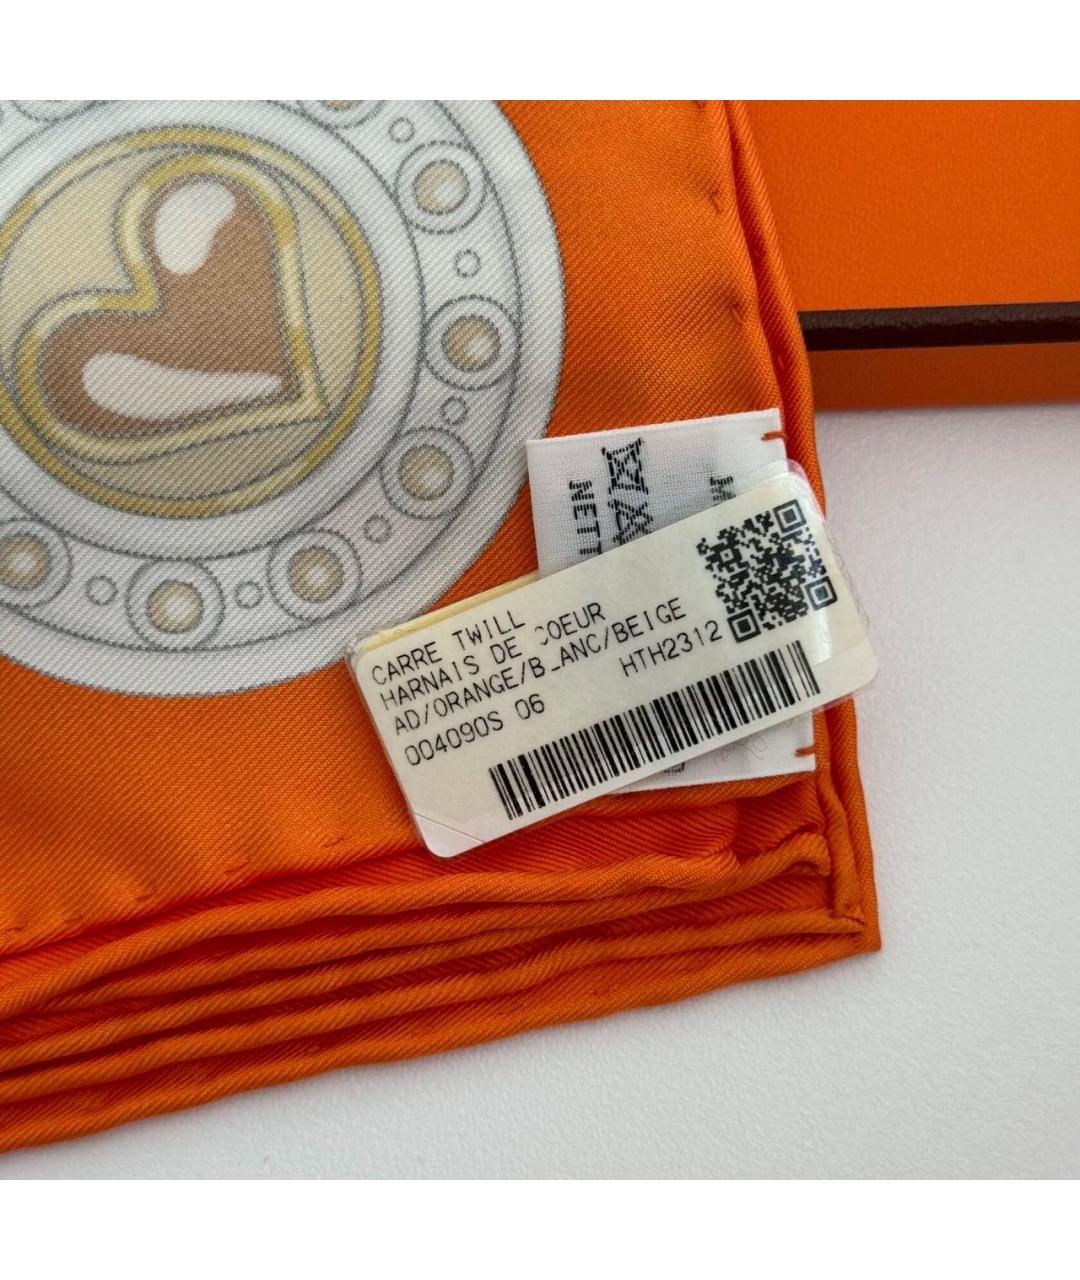 HERMES PRE-OWNED Оранжевый шелковый платок, фото 6